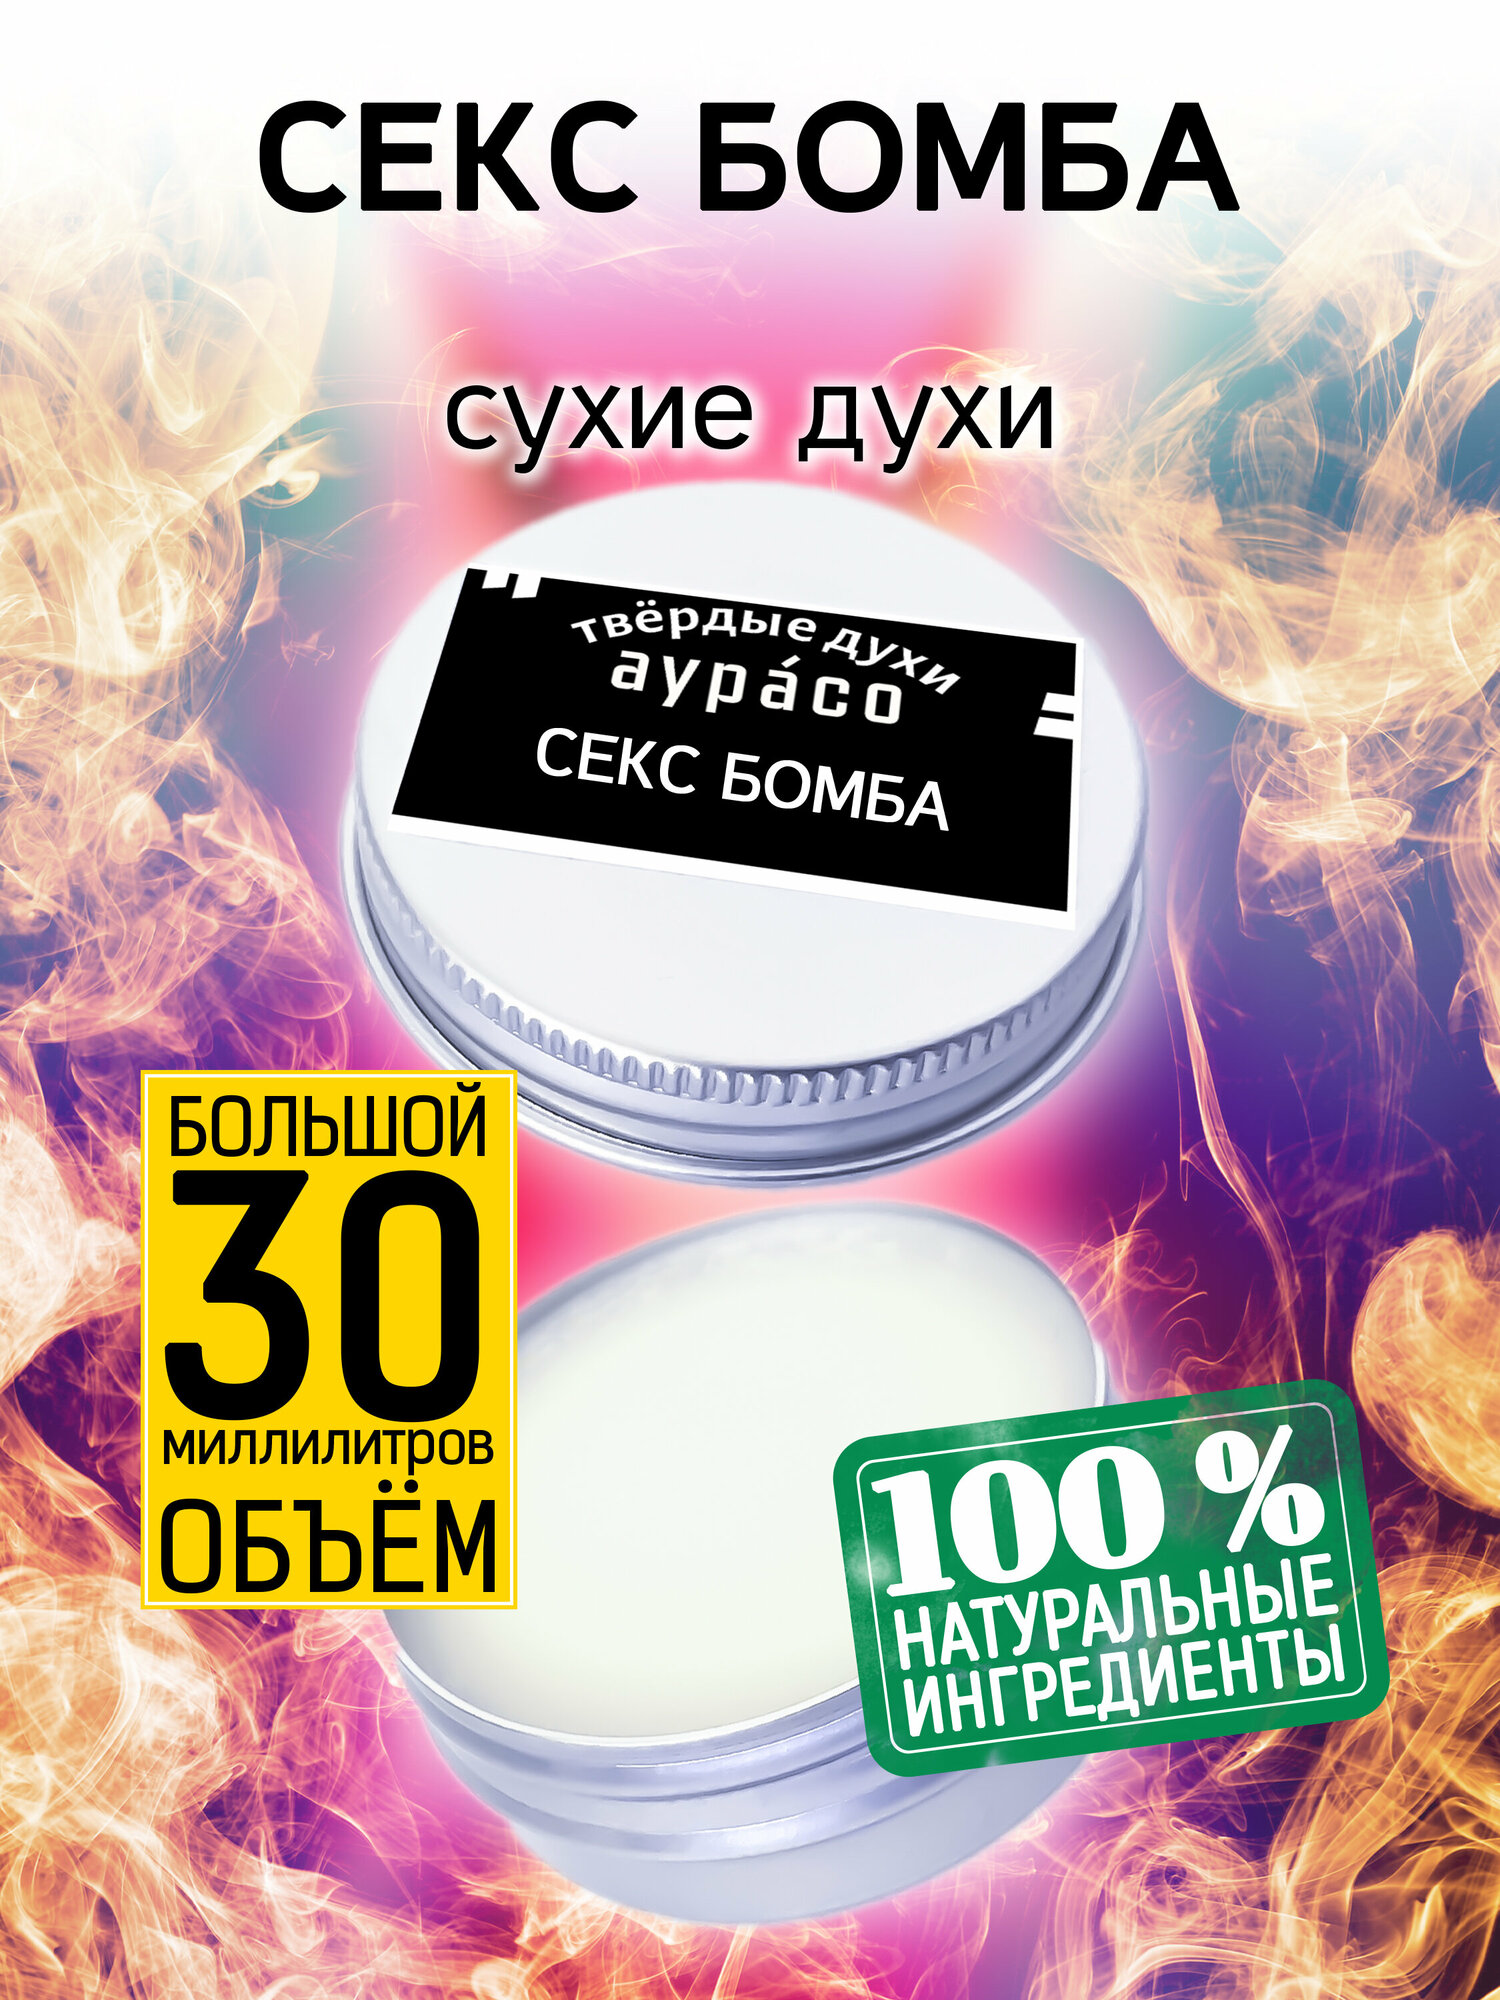 Секс бомба - сухие духи Аурасо, твёрдые духи, кремовые духи, духи женские, мужские, унисекс, 30 мл. — купить в интернет-магазине по низкой цене на Яндекс Маркете